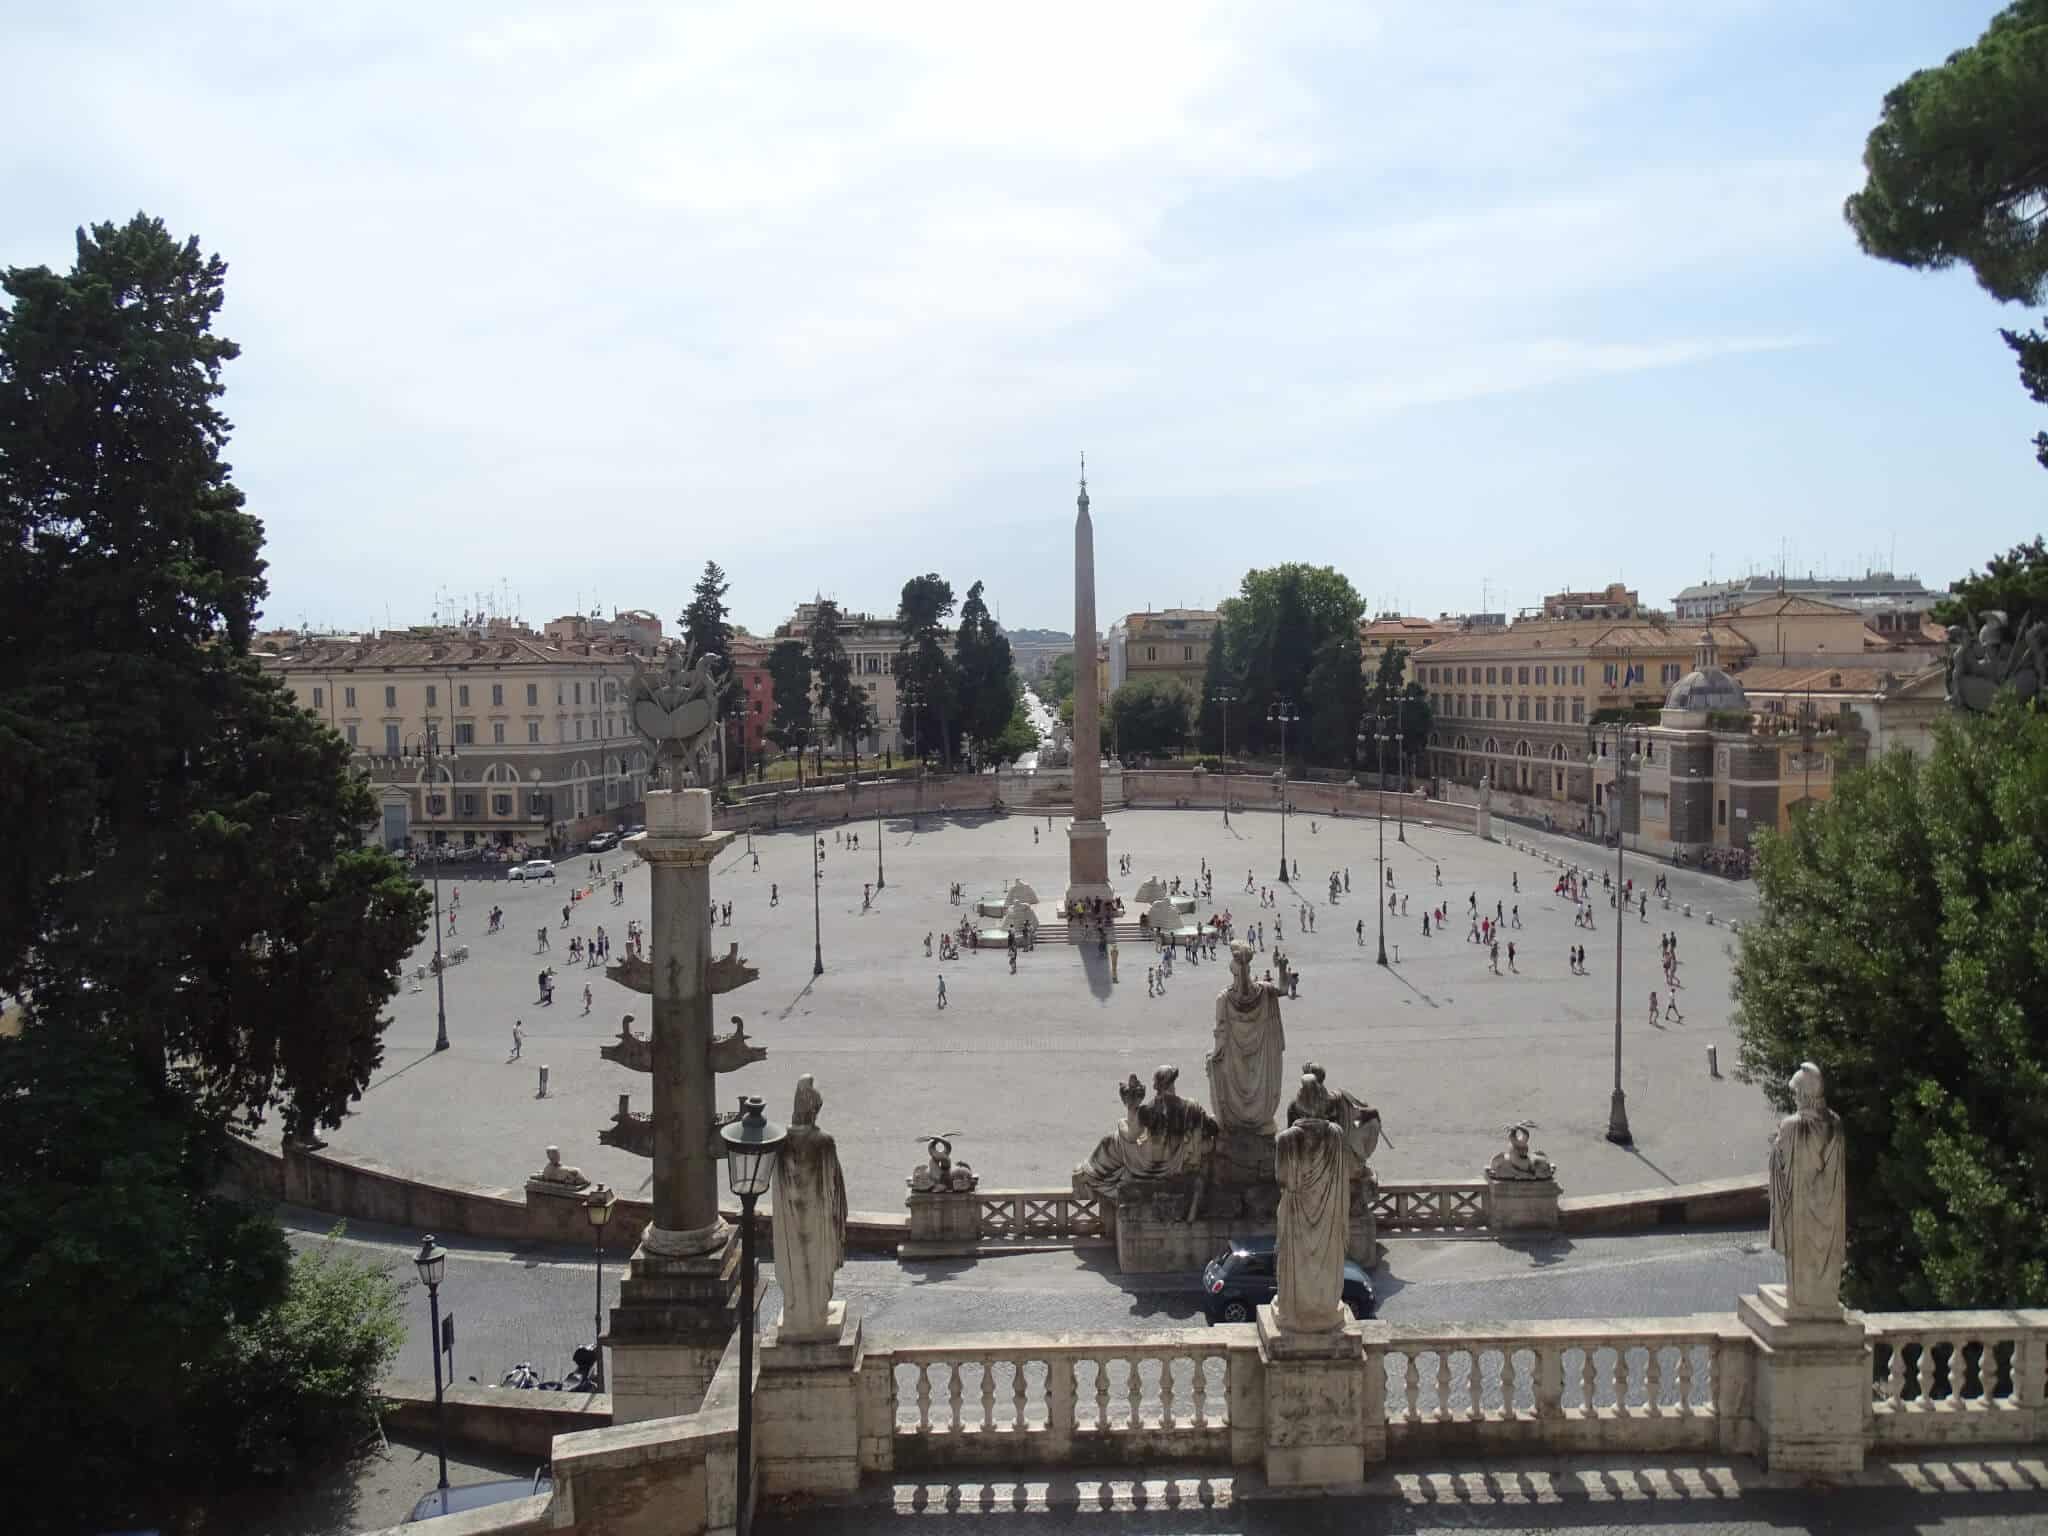 Piazza Del Popolo in Rome, Italy